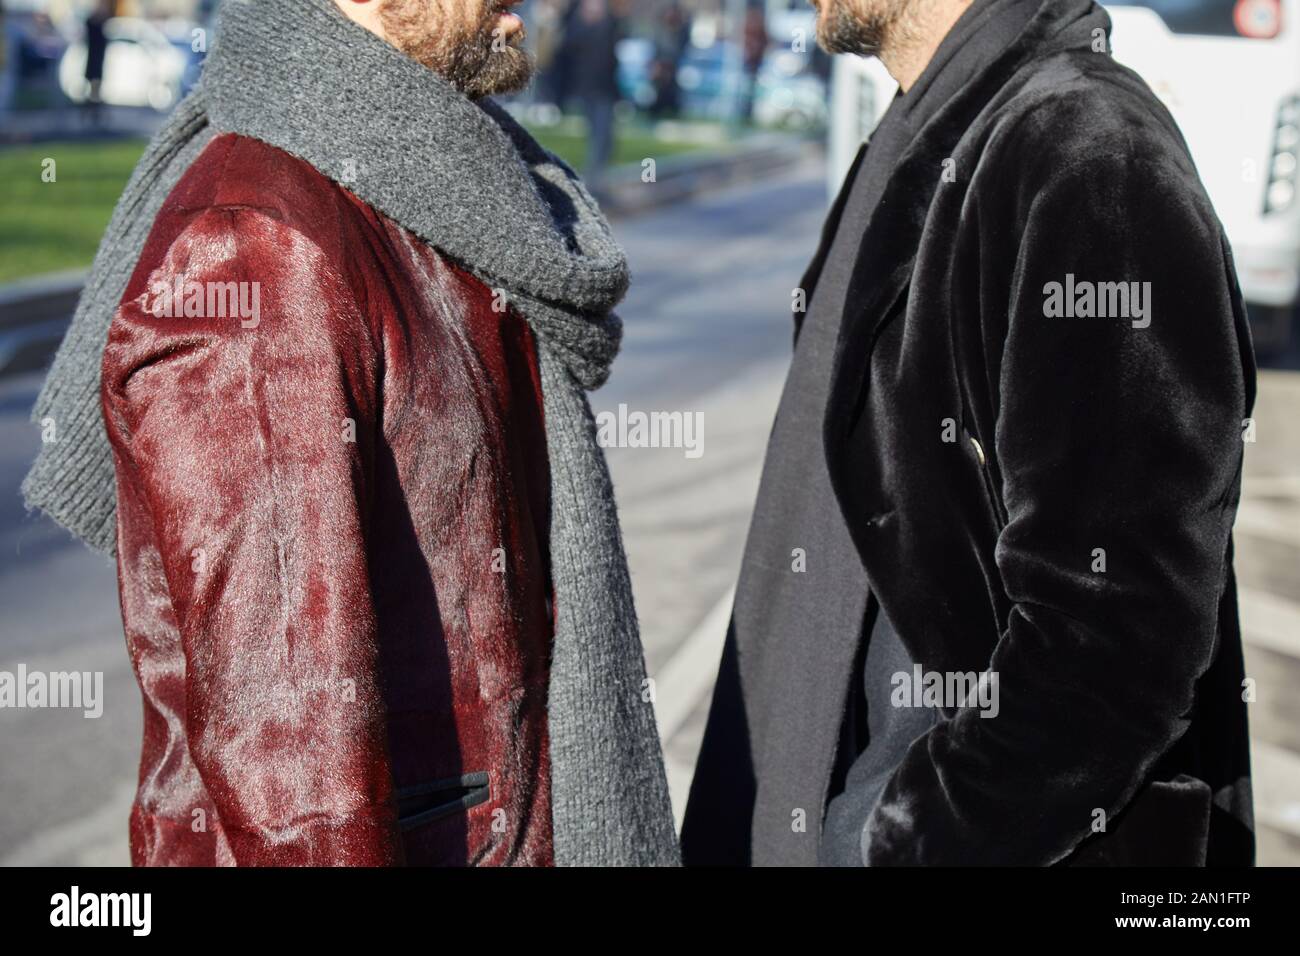 Milan, ITALIE - 11 JANVIER 2019 : hommes avec manteau en cuir de fourrure  rouge et veste en velours noir avant le défilé de mode Emporio Armani, rue  de la semaine de